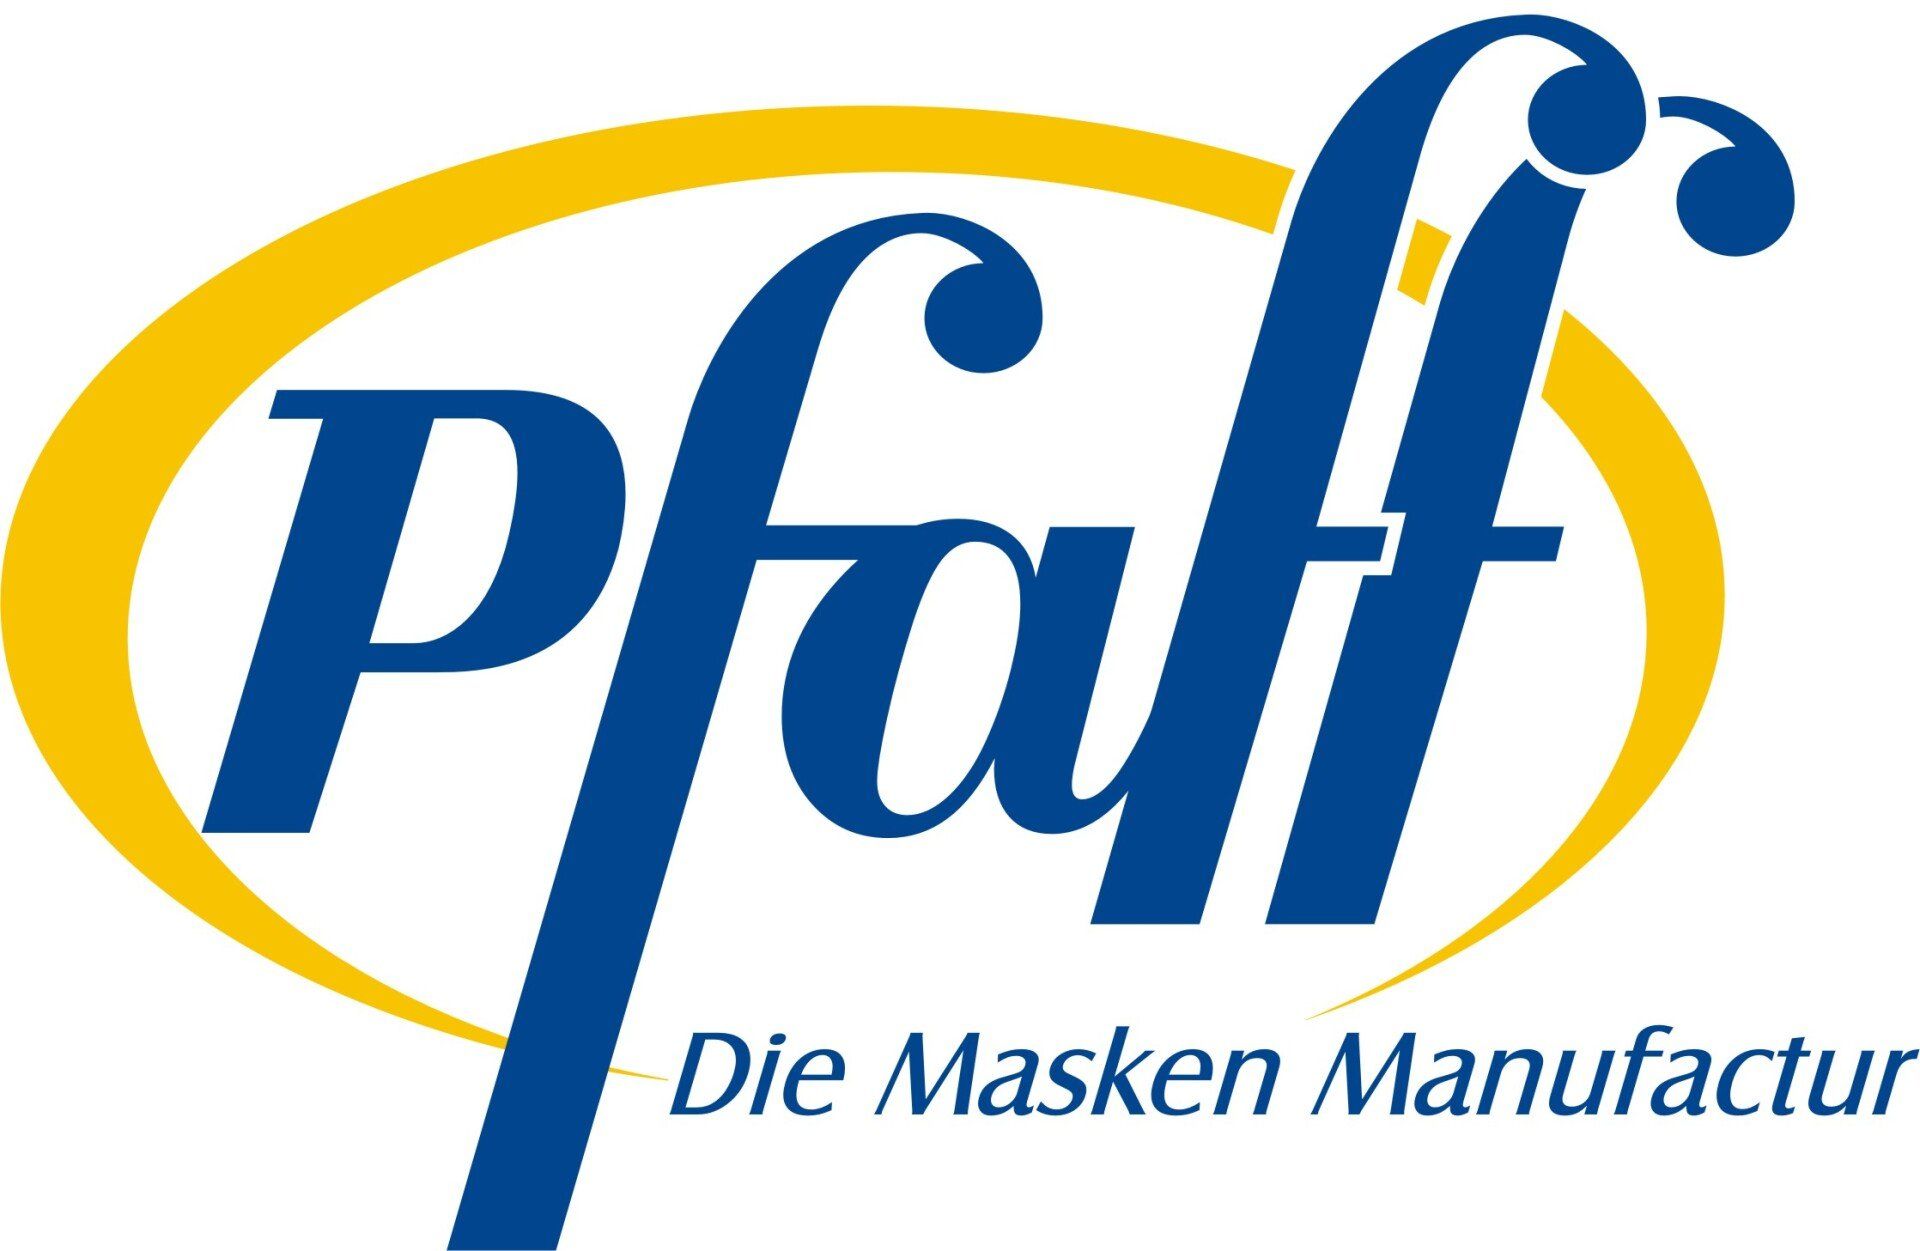 Pfaff die Maskenmanufactur-Logo